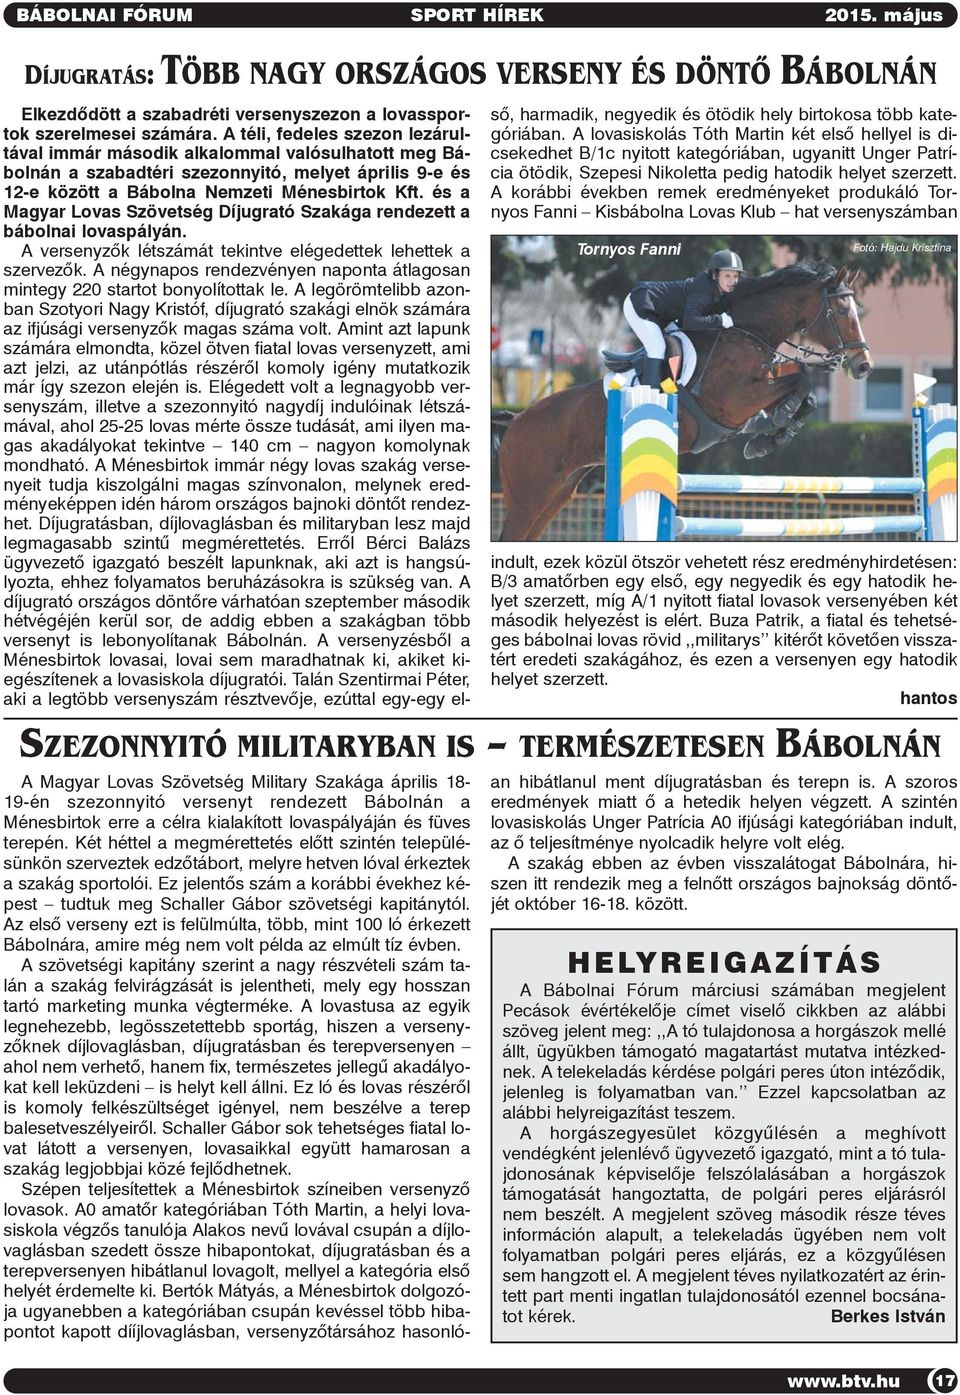 és a Magyar Lovas Szövetség Díjugrató Szakága rendezett a bábolnai lovaspályán. A versenyzõk létszámát tekintve elégedettek lehettek a szervezõk.